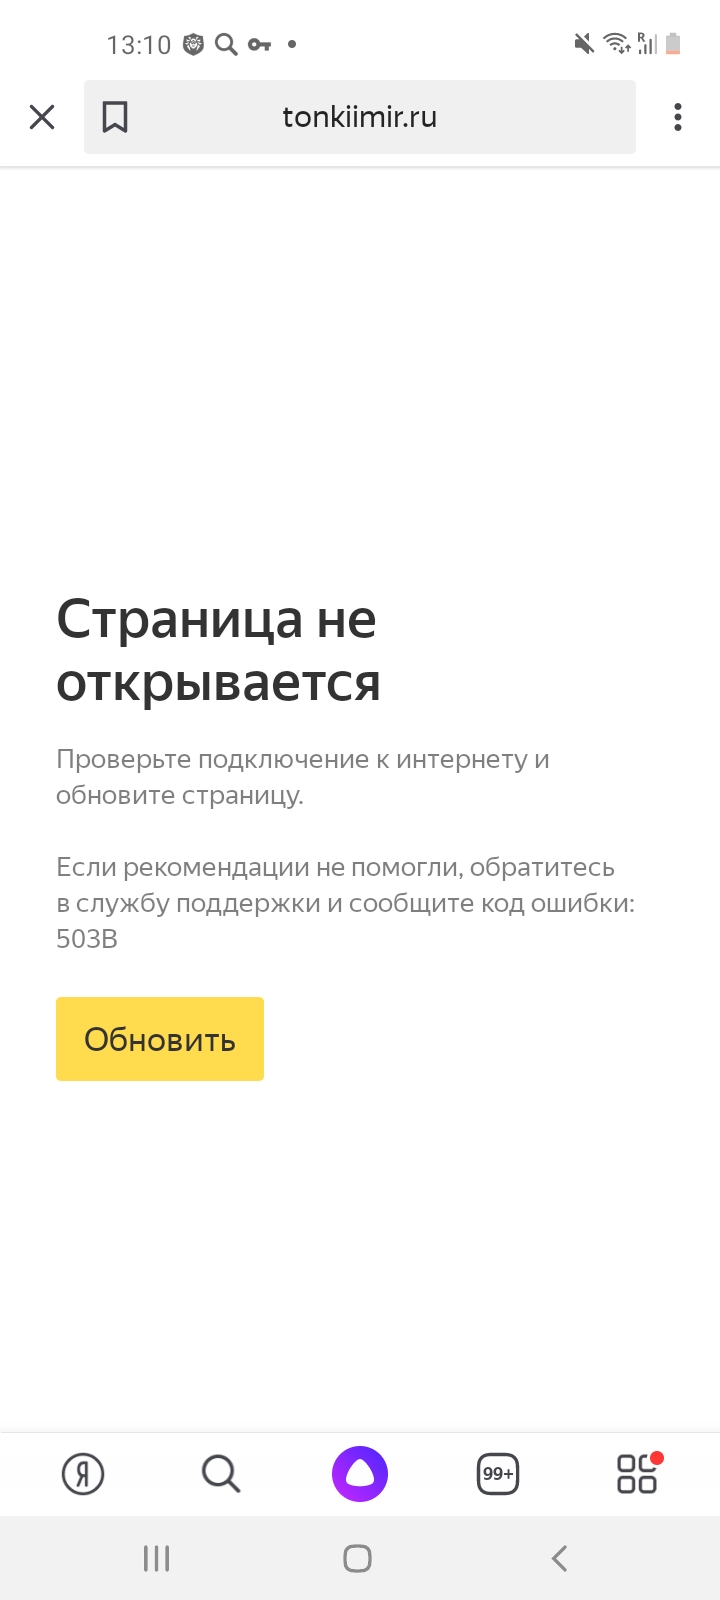 Пишем здесь про все проблемы, чтобы программист решал  - Screenshot_20210622-131026_Yandex.jpg